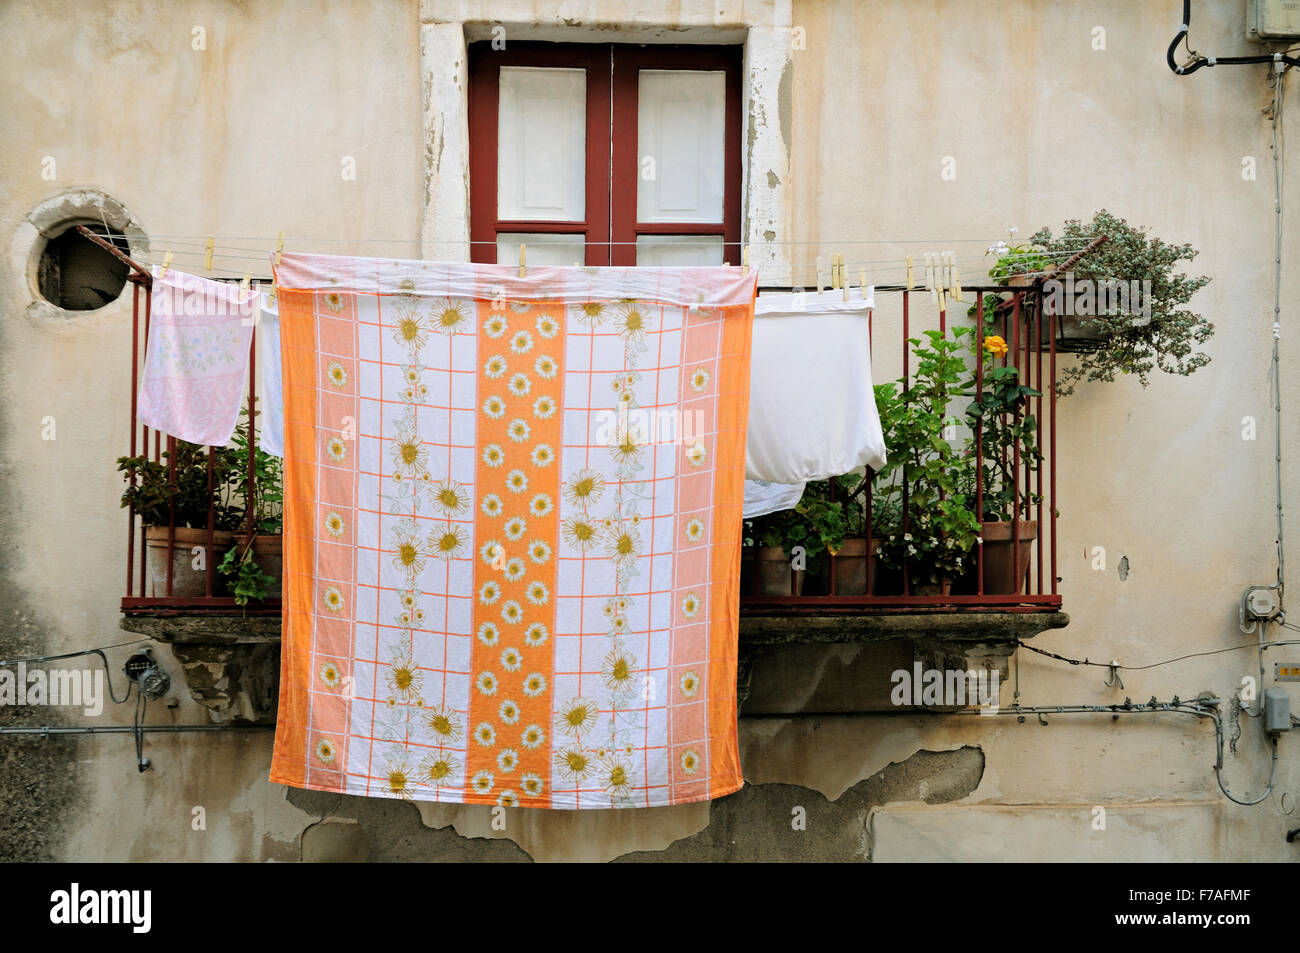 Wäsche aufhängen auf einem Balkon in Forza d'Agrò, Sizilien, Italien  Stockfotografie - Alamy